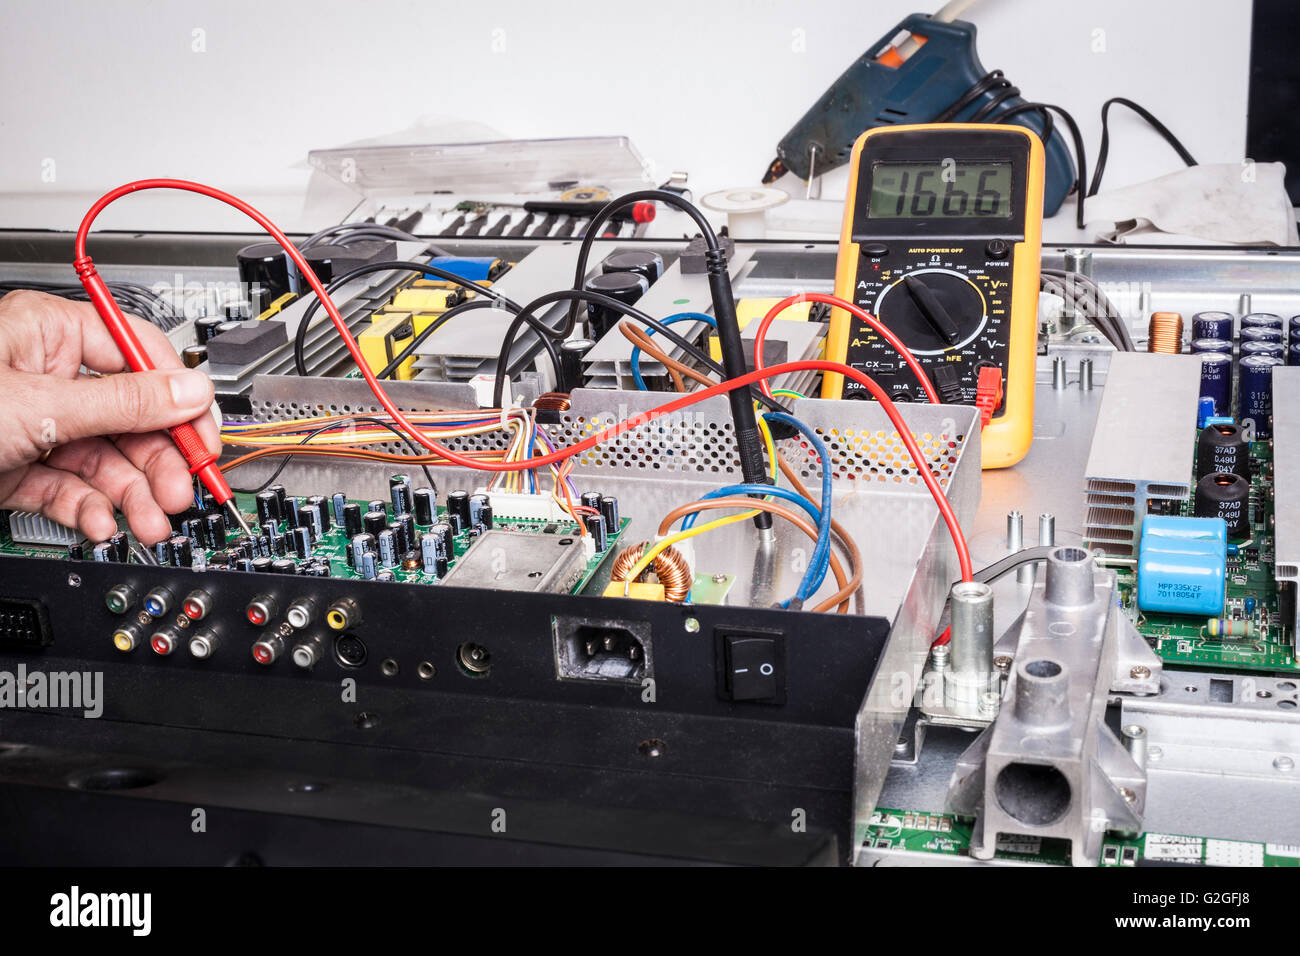 Elettronica per il servizio di riparazione con la sonda rossa e condensatori sulla scheda elettronica Foto Stock